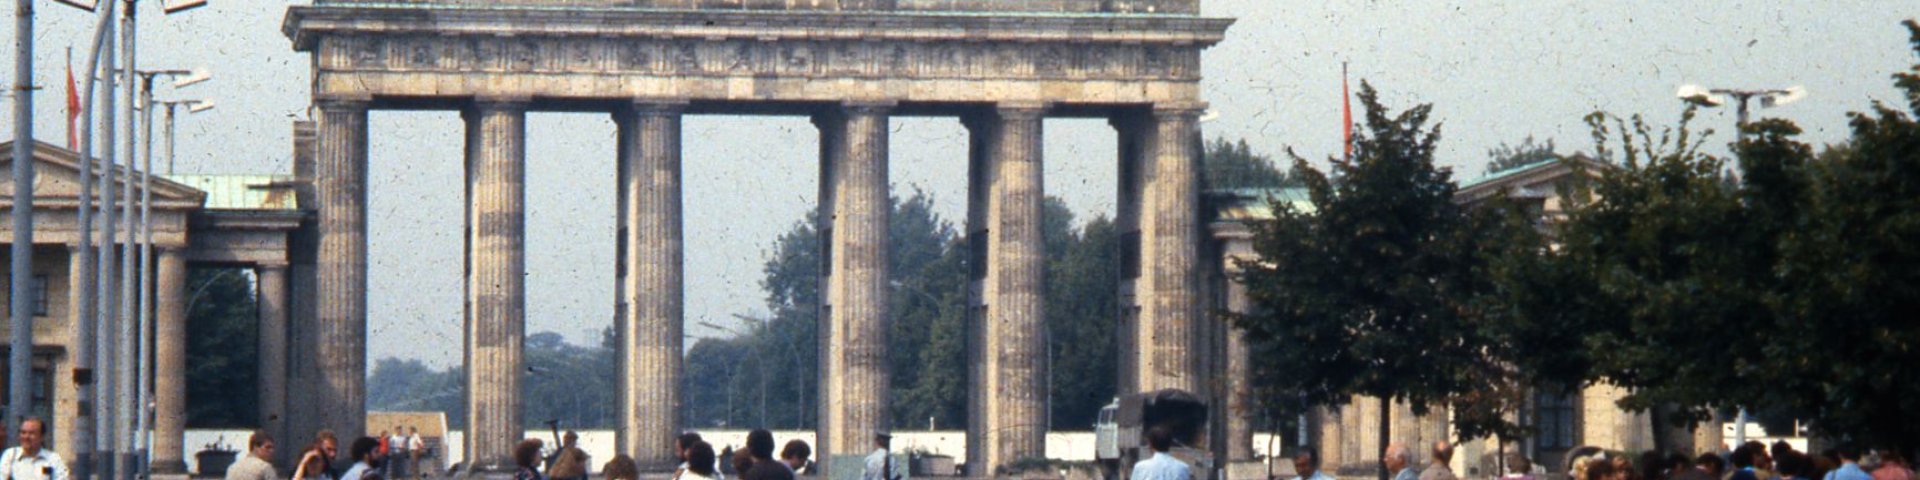 Alles 1989. aastal jooksis raudne eesriie läbi Saksamaa südame. Kuhu joonistatakse Euroopa uued piirid ja millised need piirid hakkavad olema, on tänapäeva kesksemaid küsimusi. Foto: George Garrigues (Vikipeedia)